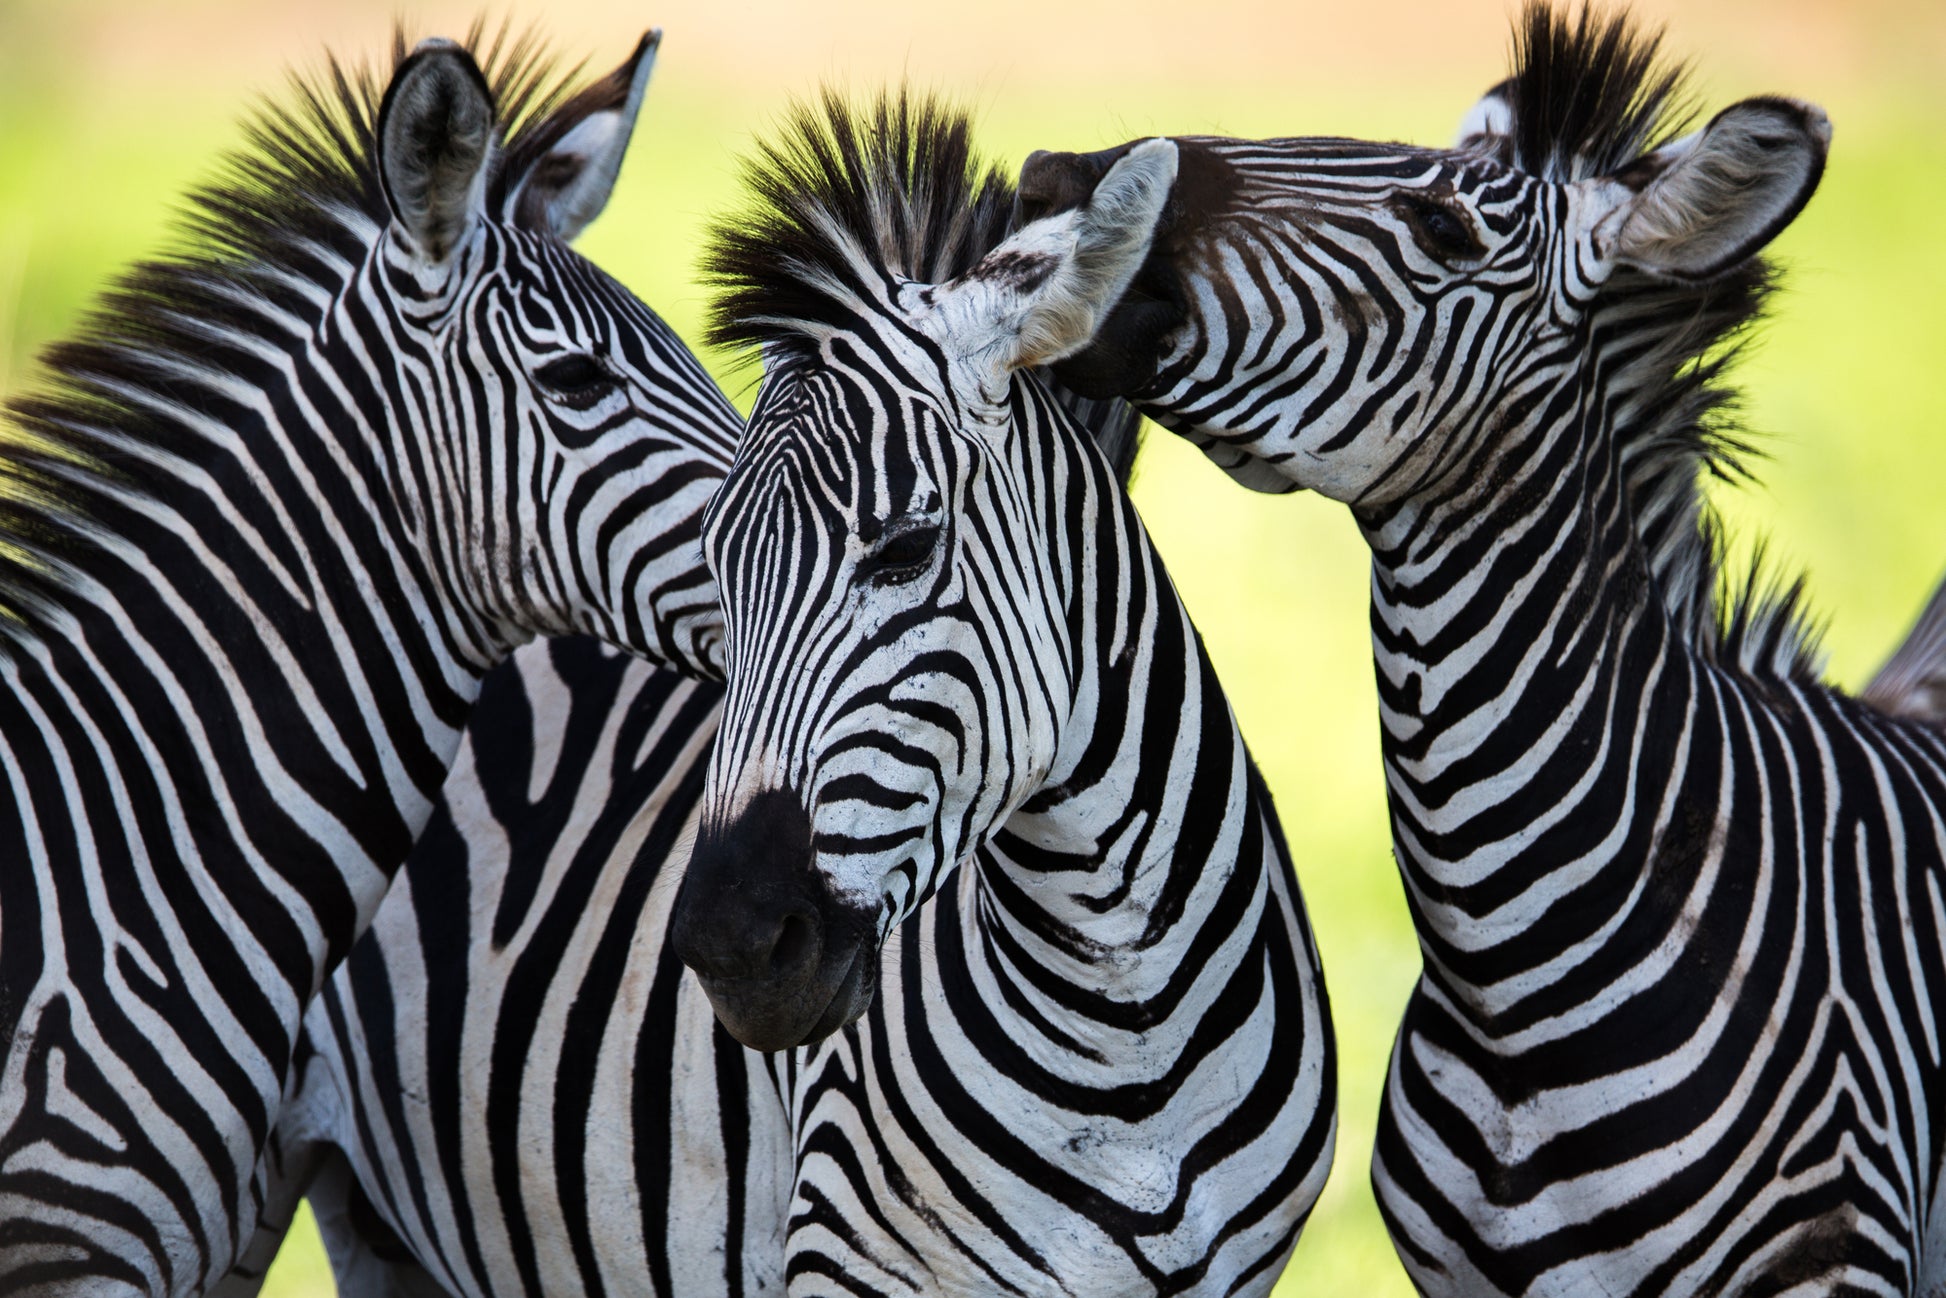 Zebras Potrait Photograph Home Decor Premium Quality Poster Print Choose Your Sizes